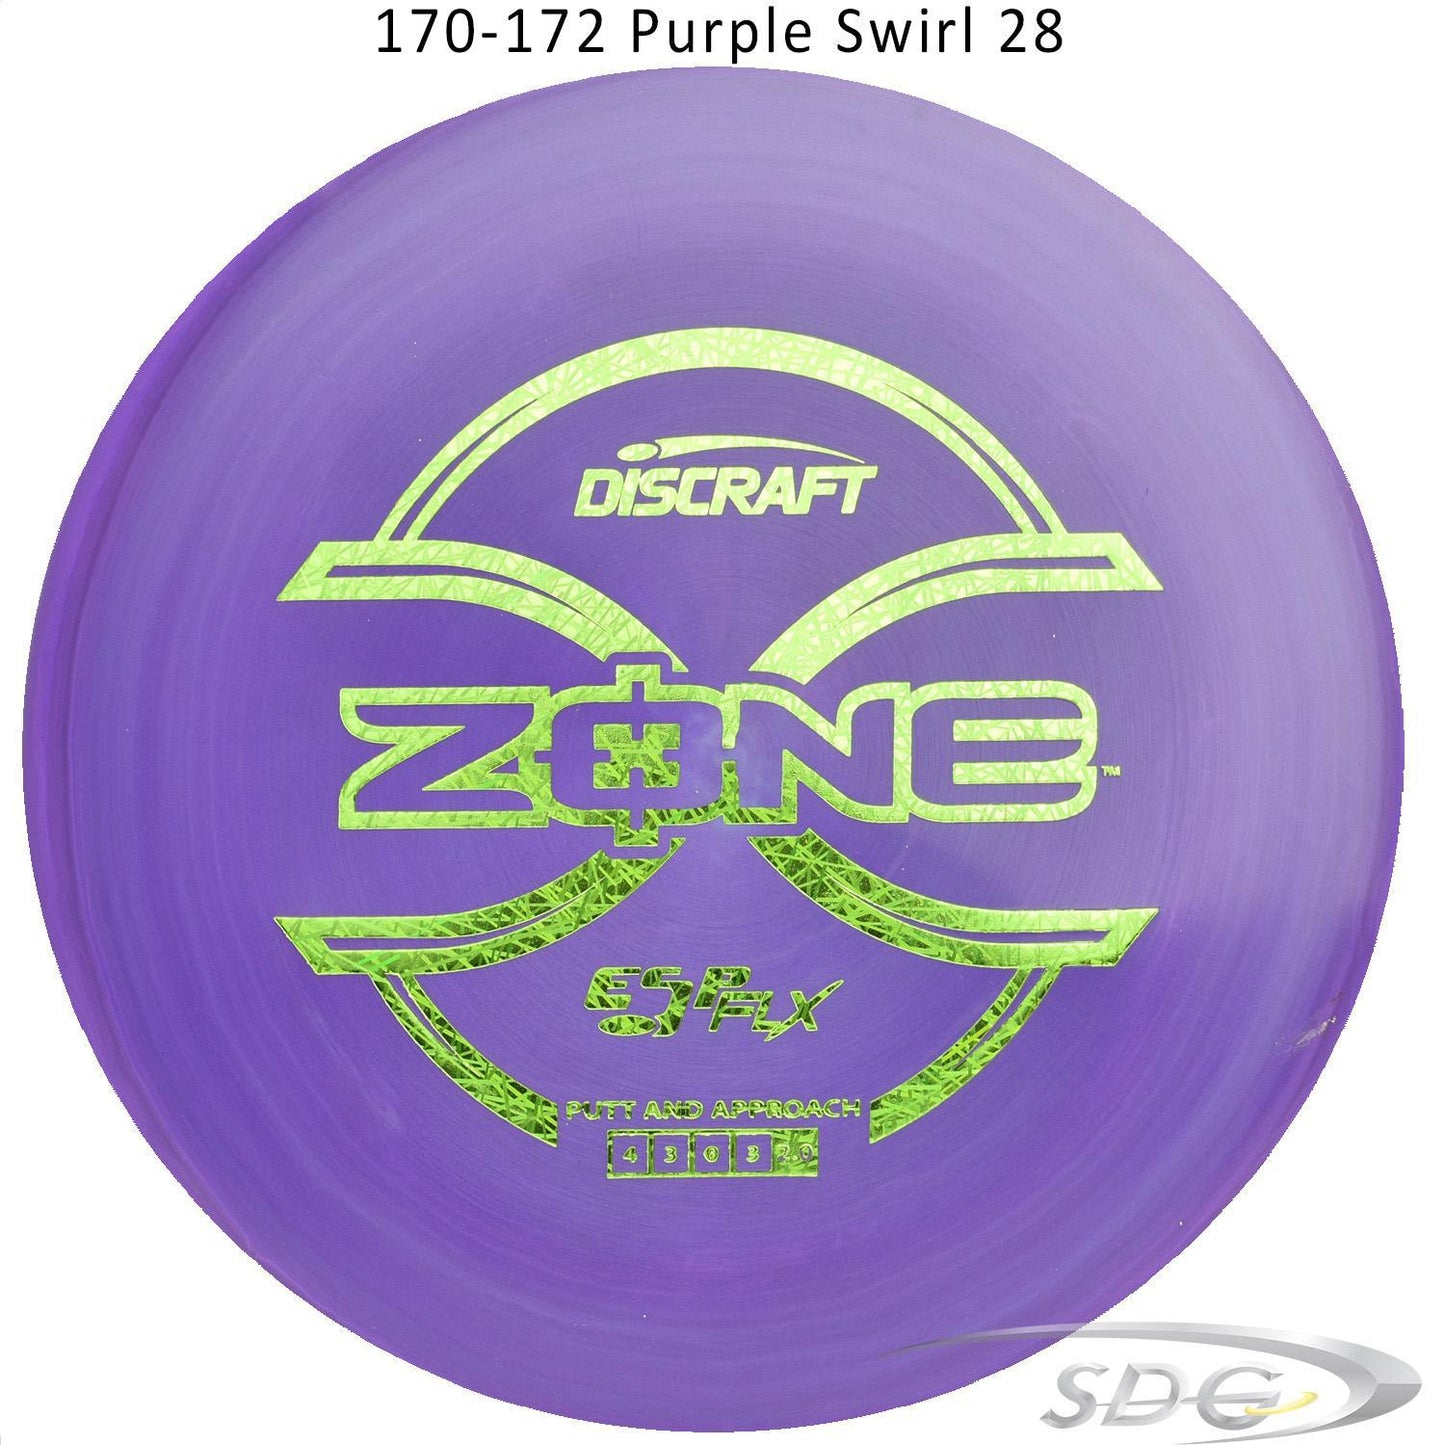 discraft-esp-flx-zone-disc-golf-putter 170-172 Purple Swirl 28 